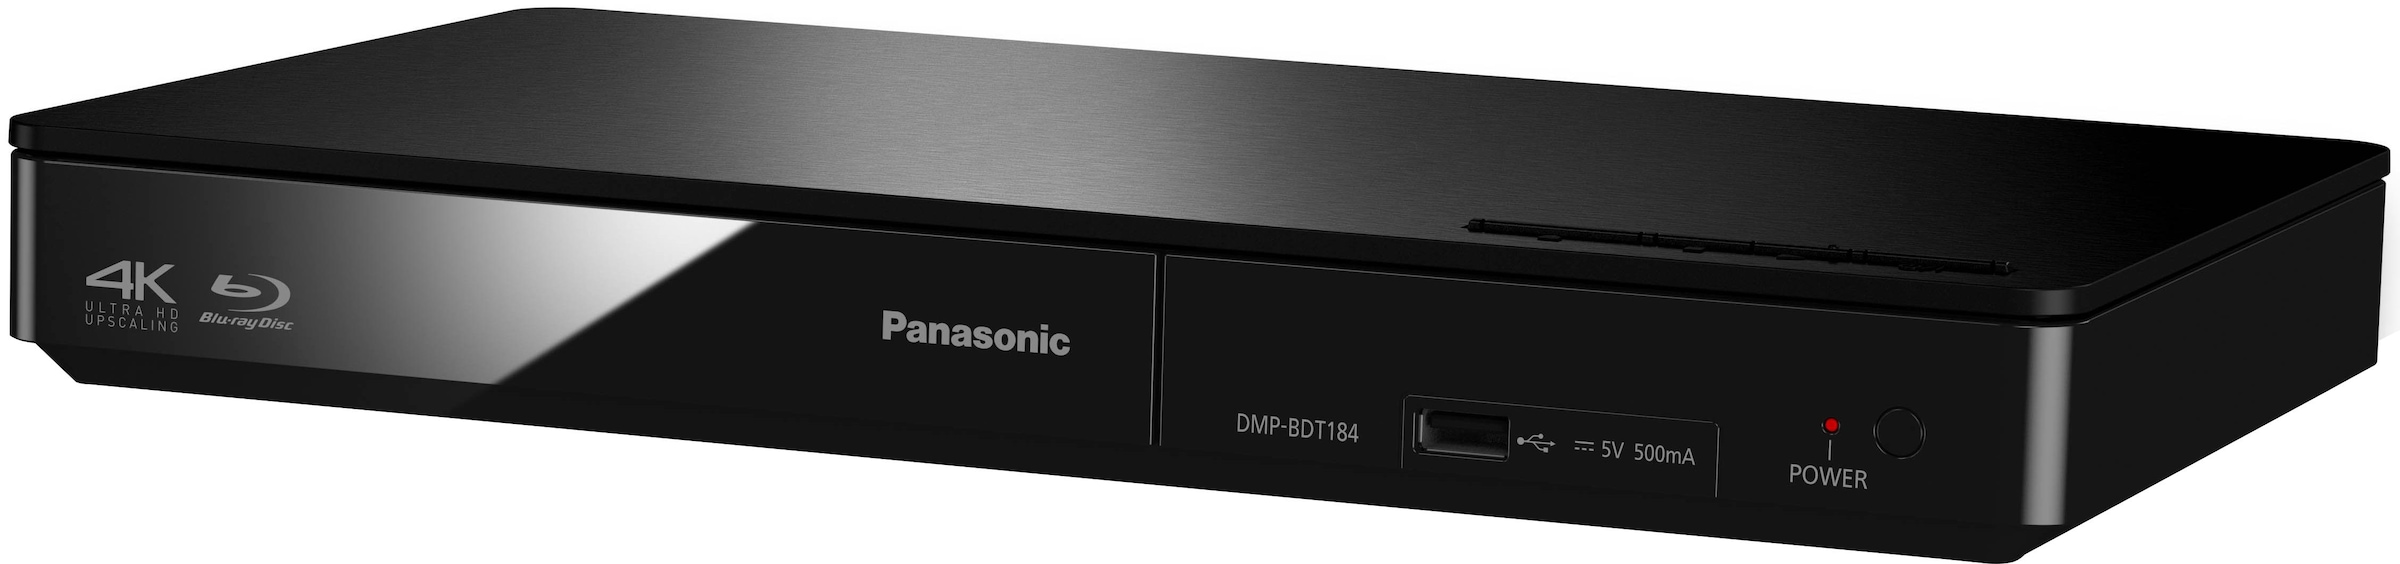 Panasonic Blu-ray-Player »DMP-BDT184 / DMP-BDT185«, LAN (Ethernet), 4K  Upscaling-Schnellstart-Modus online bei OTTO